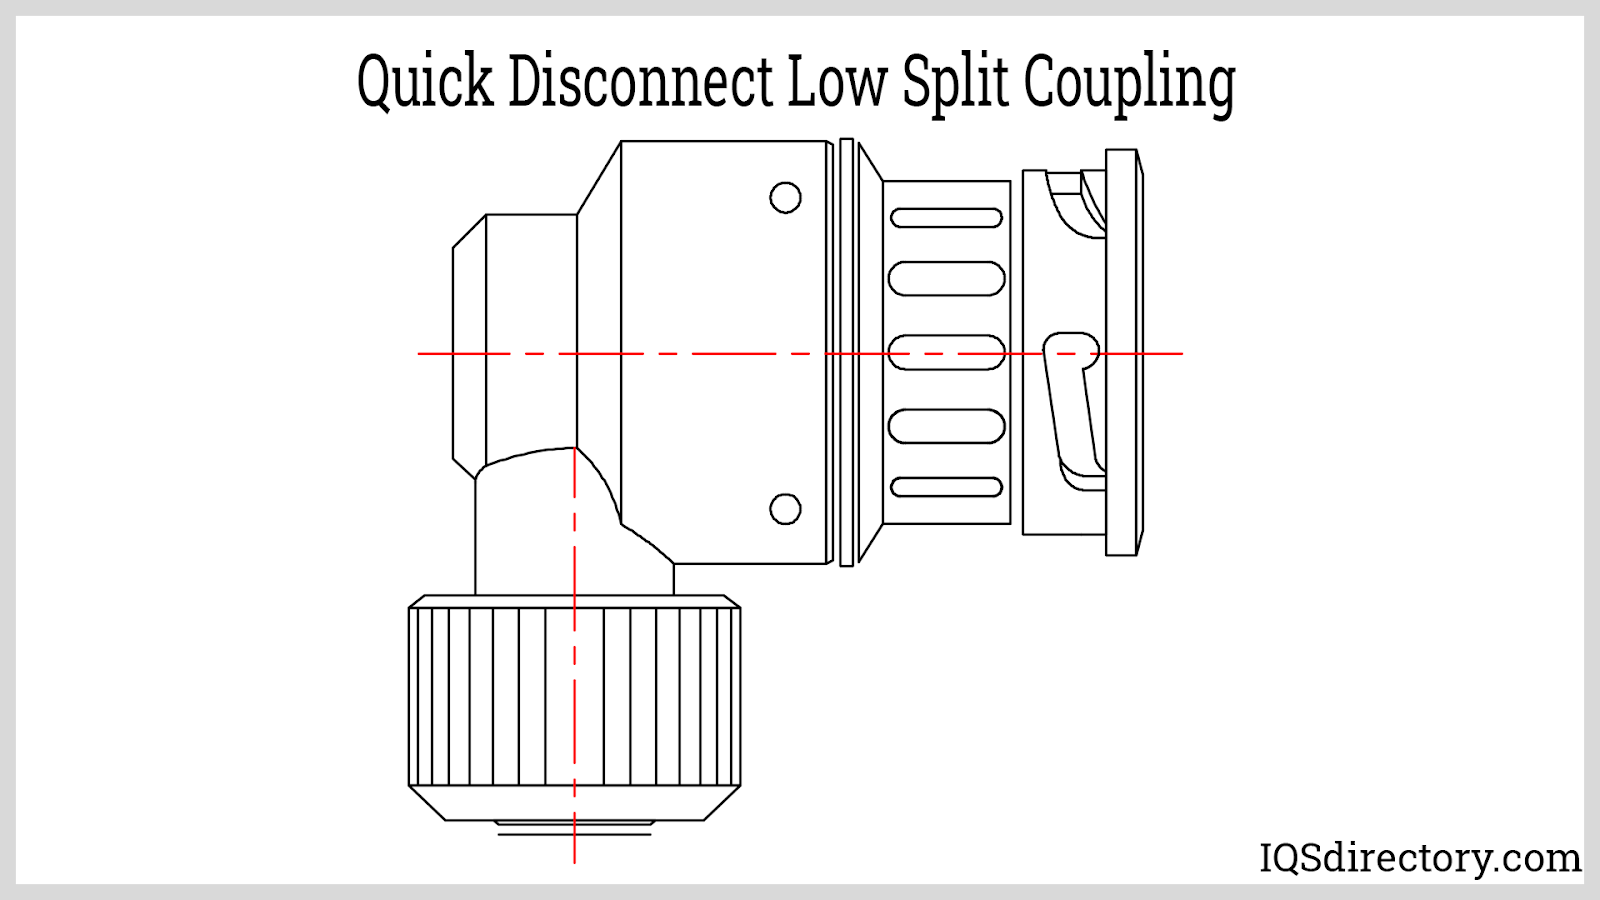 Quick Disconnect Low Split Coupling